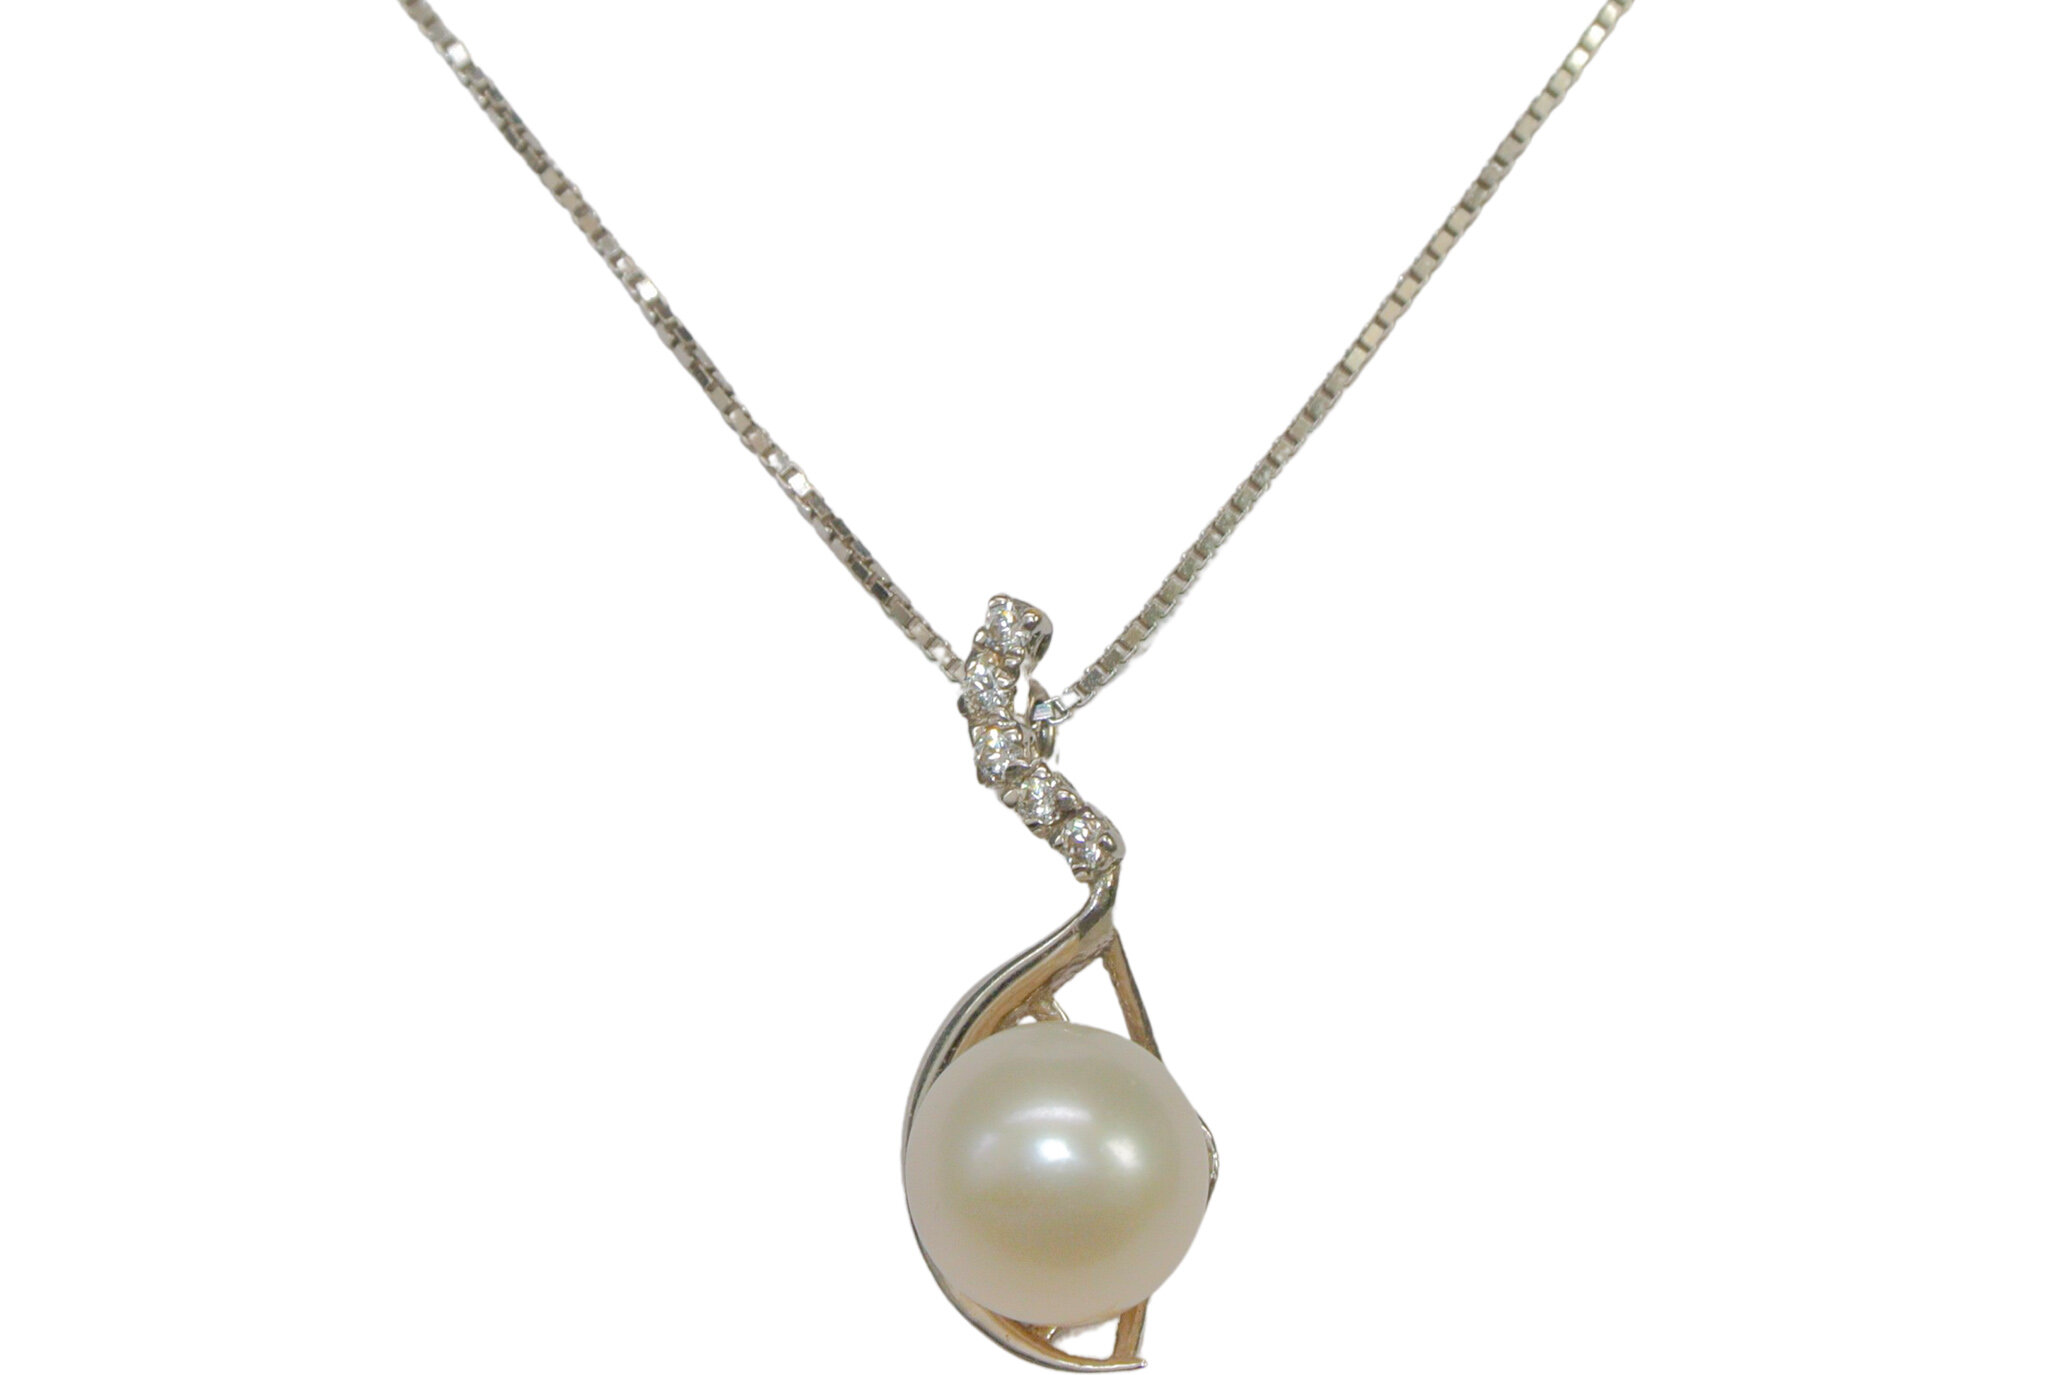 Collier en or blanc avec zircons et une perle